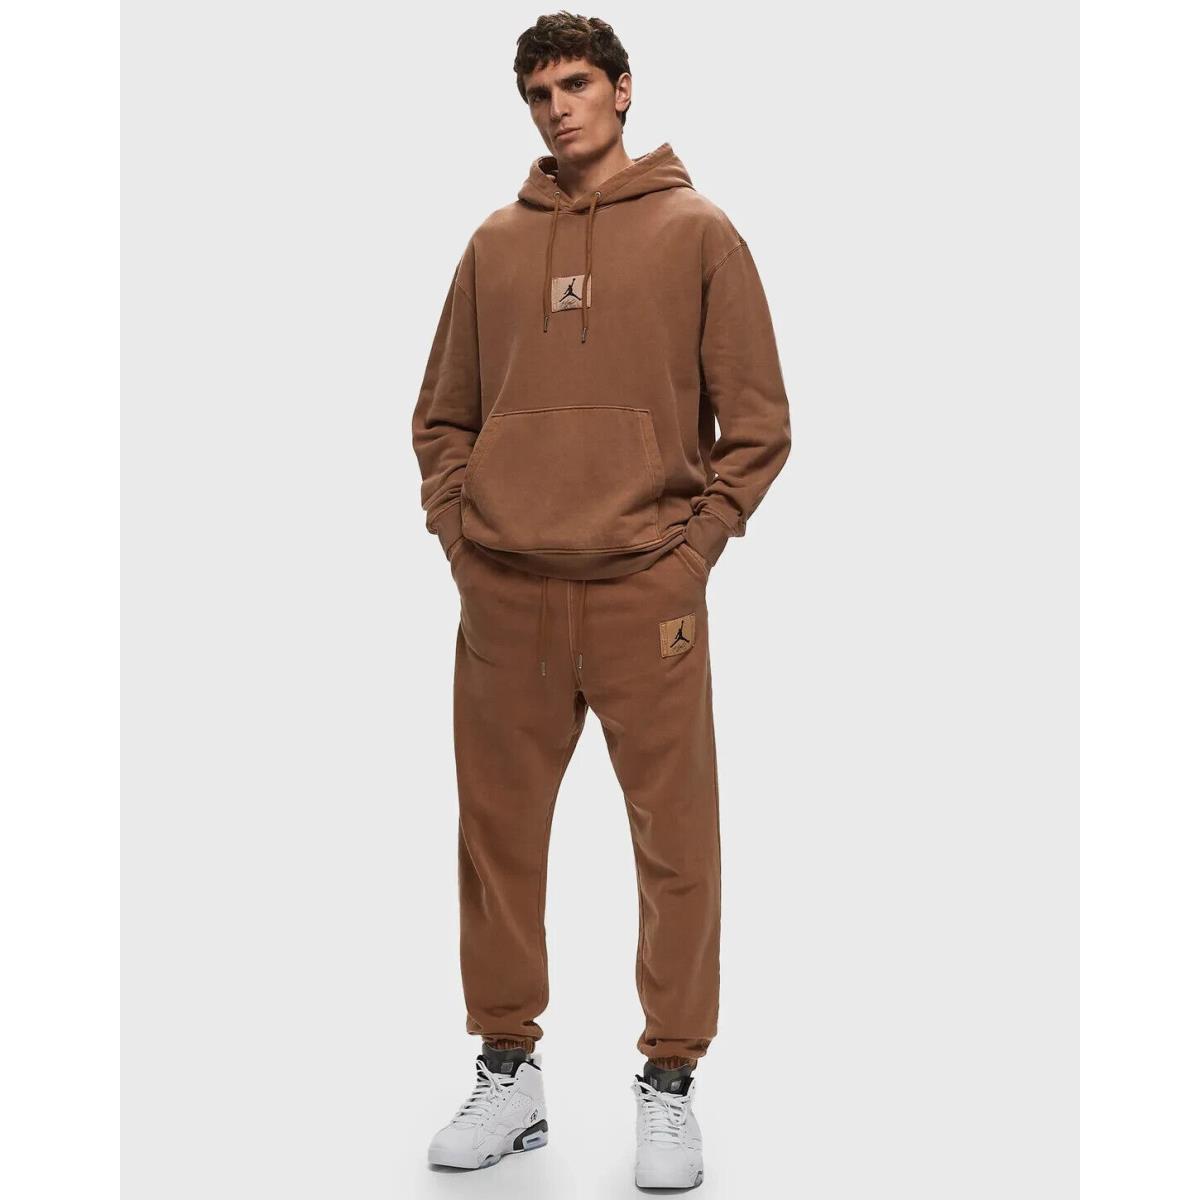 Nike Air Jordan Fleece Mens Size XL British Tan Sweatpant Joggers FB7298 281